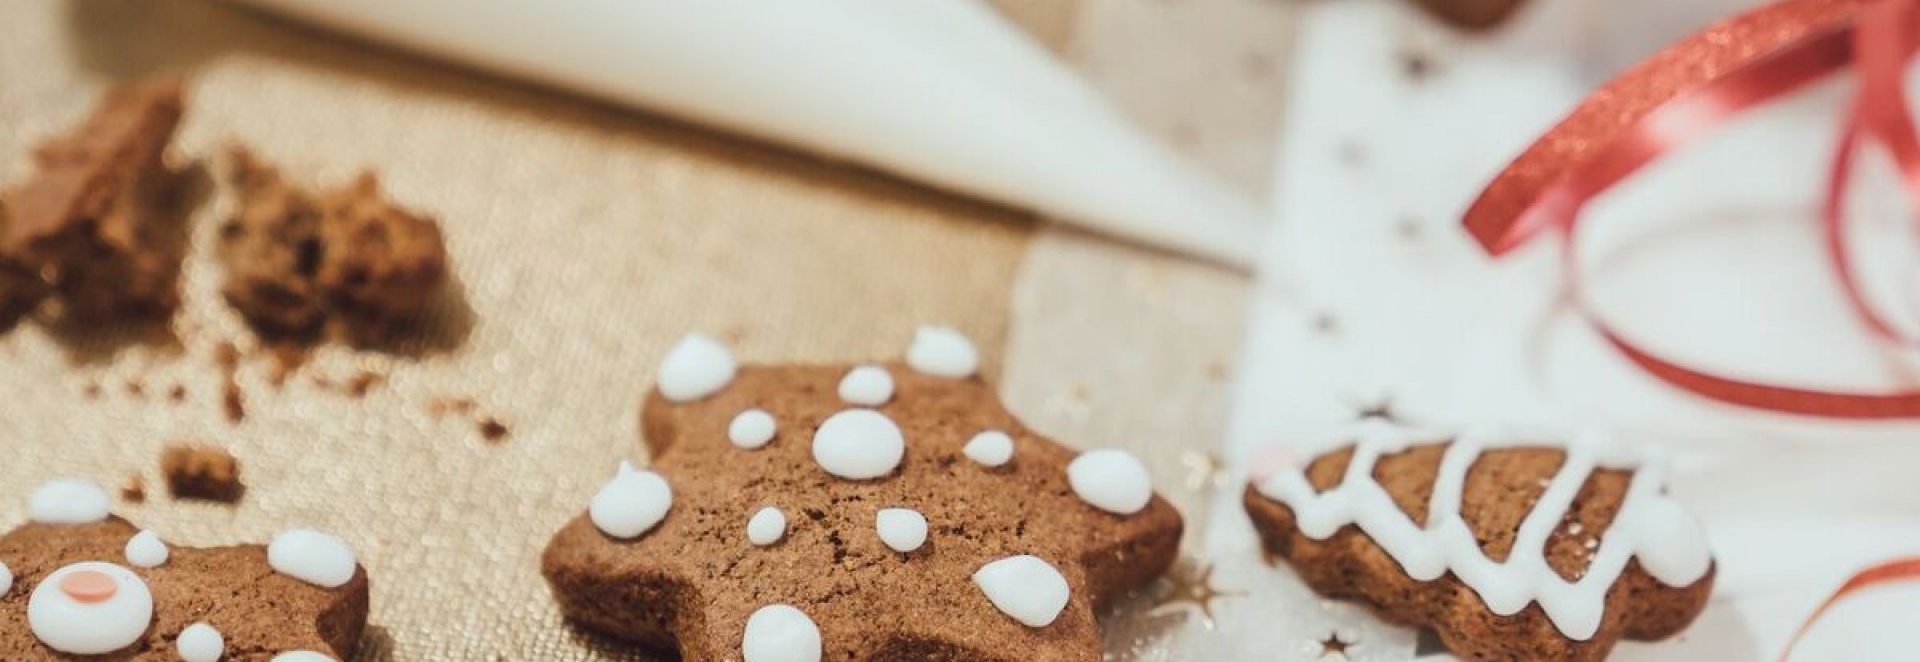 Tajemstvím zkušených pekařek je kvalitní kakao